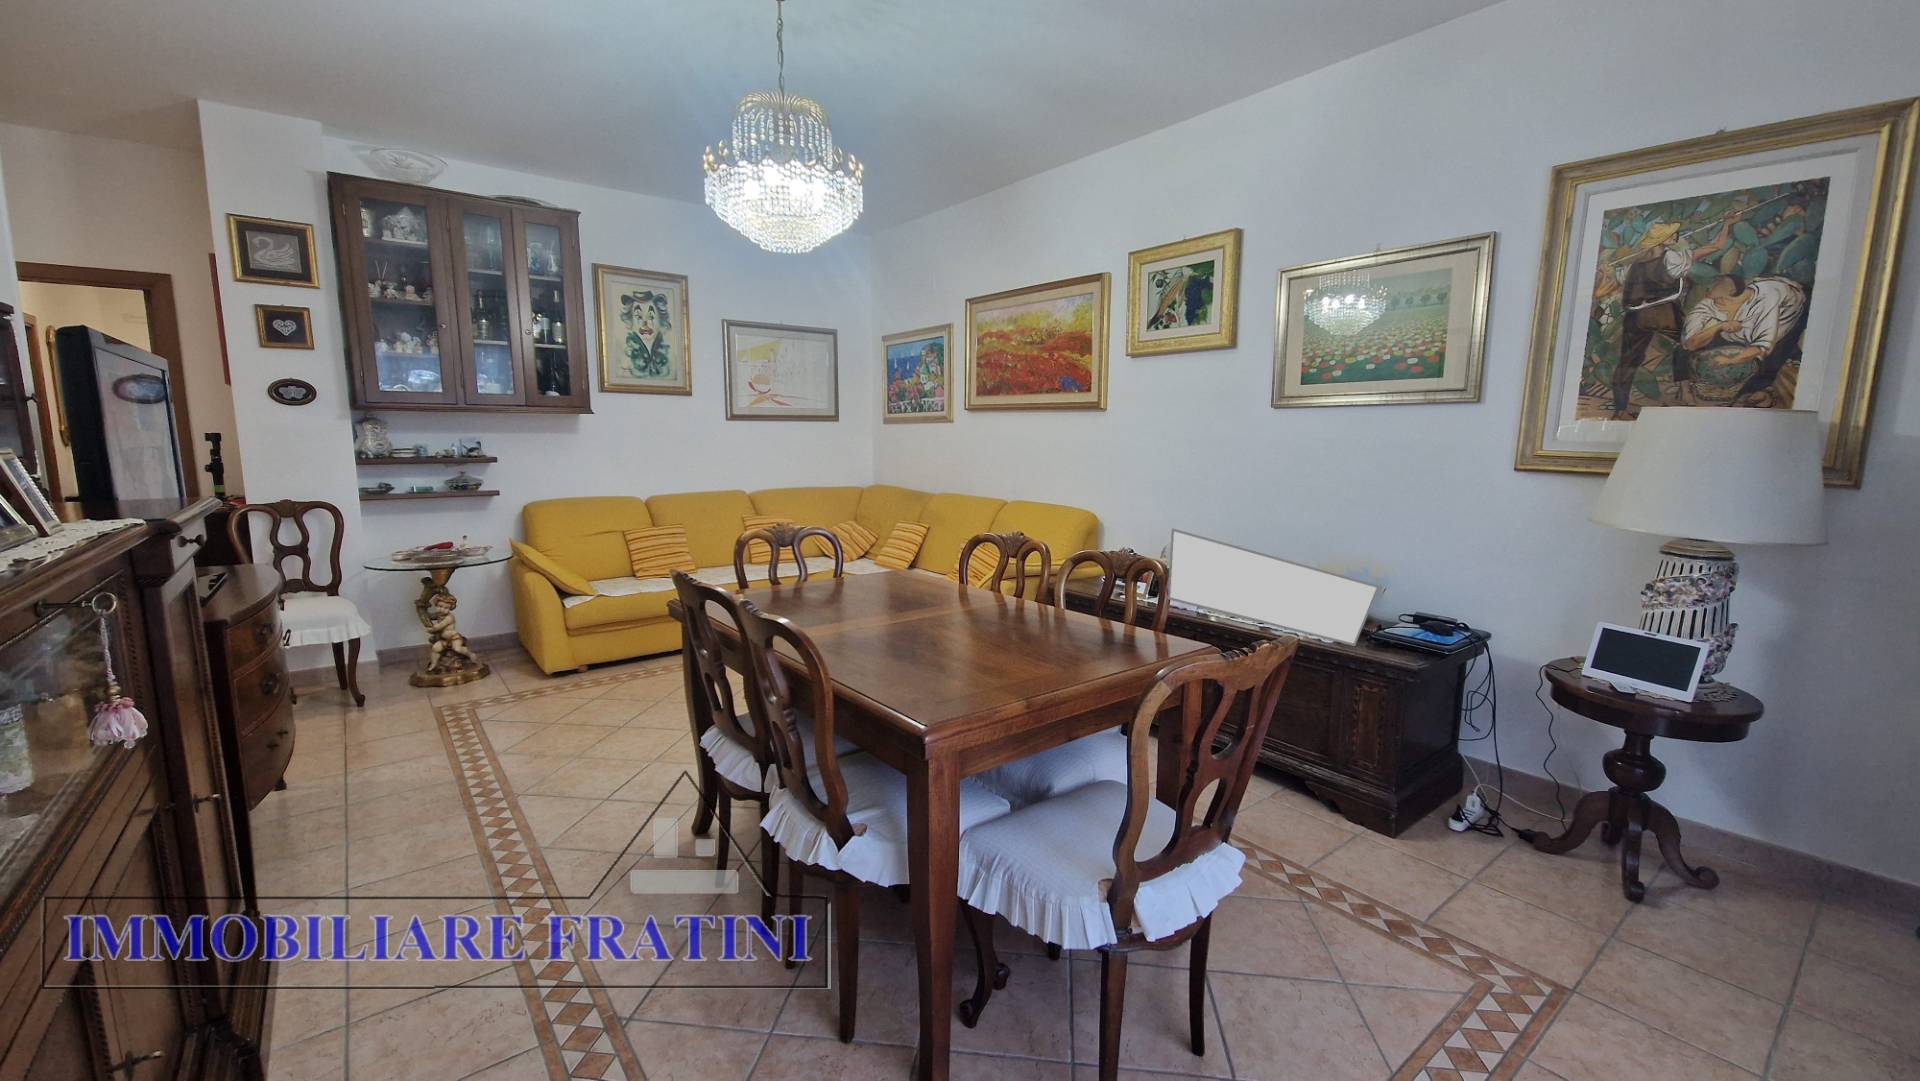 Appartamento in vendita a Maltignano, 5 locali, prezzo € 115.000 | PortaleAgenzieImmobiliari.it